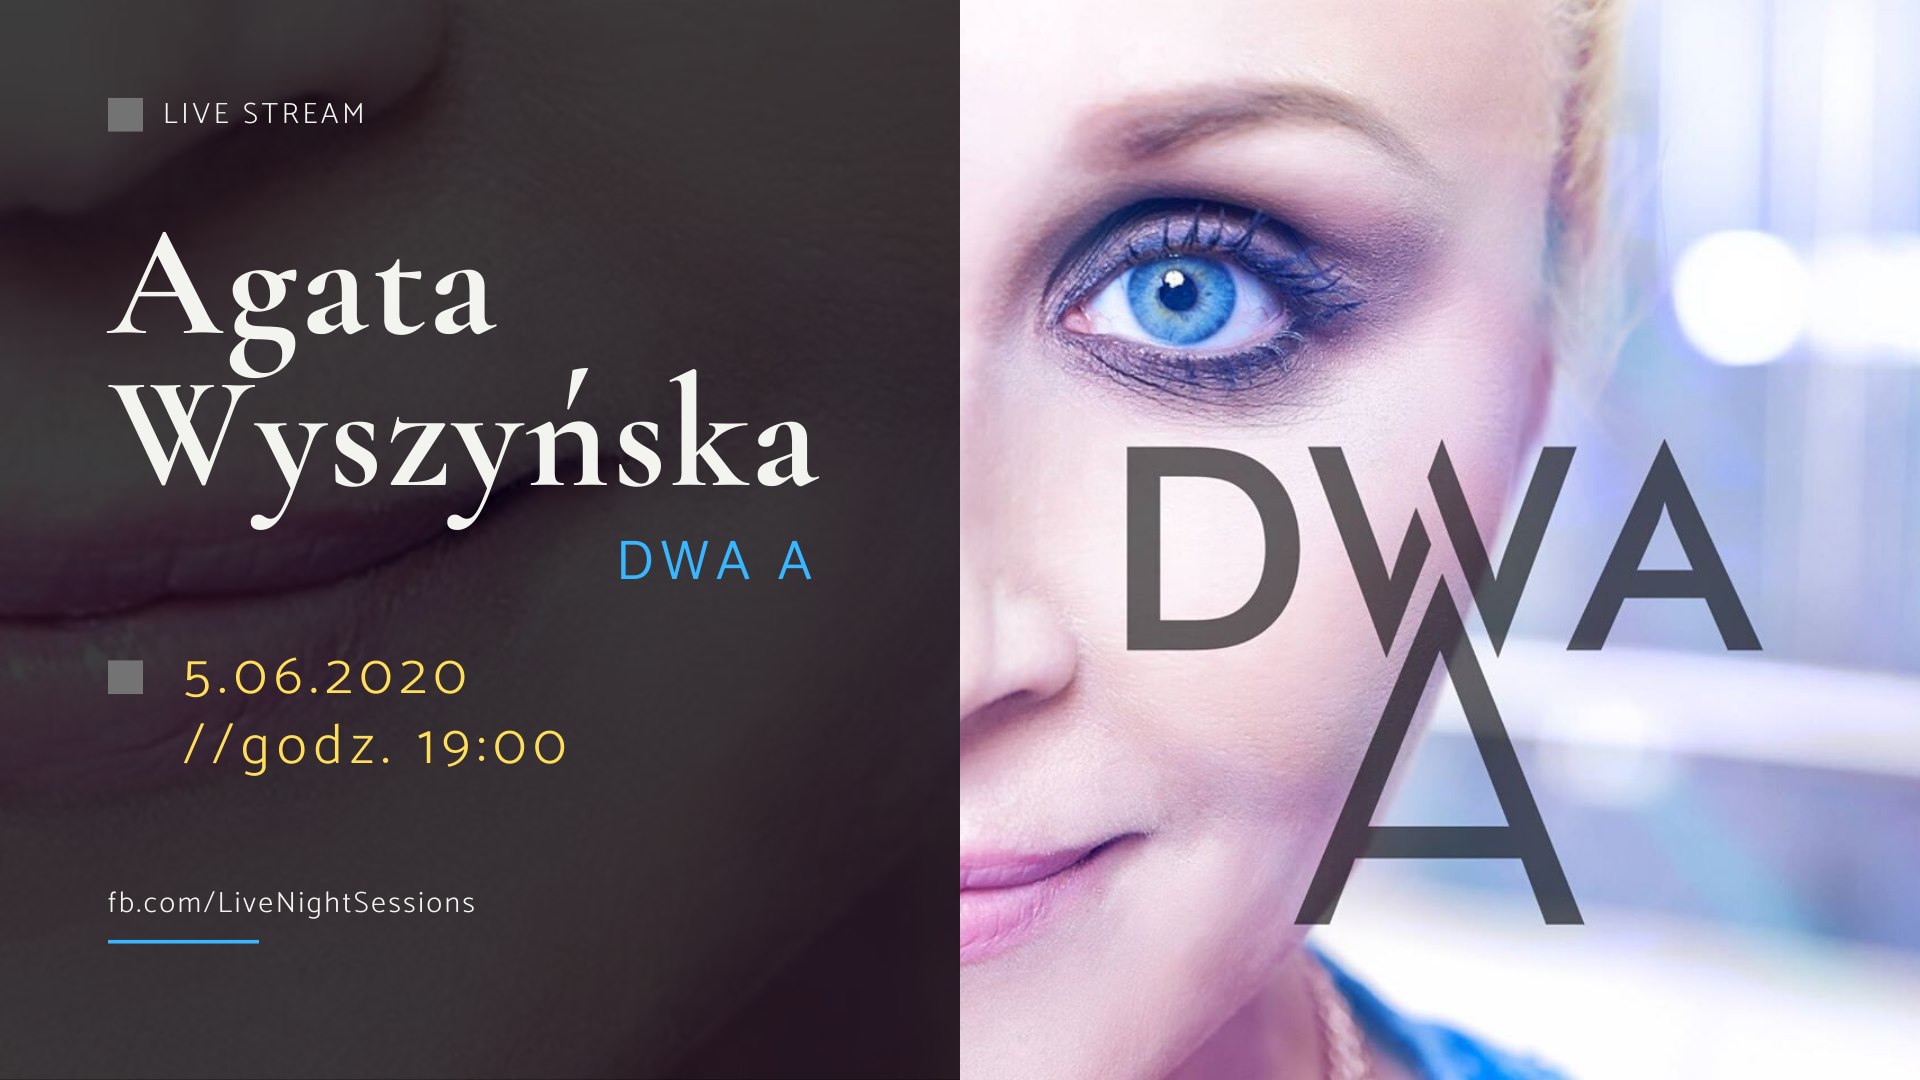 Live stream - Agata Wyszyńska "Dwa A"